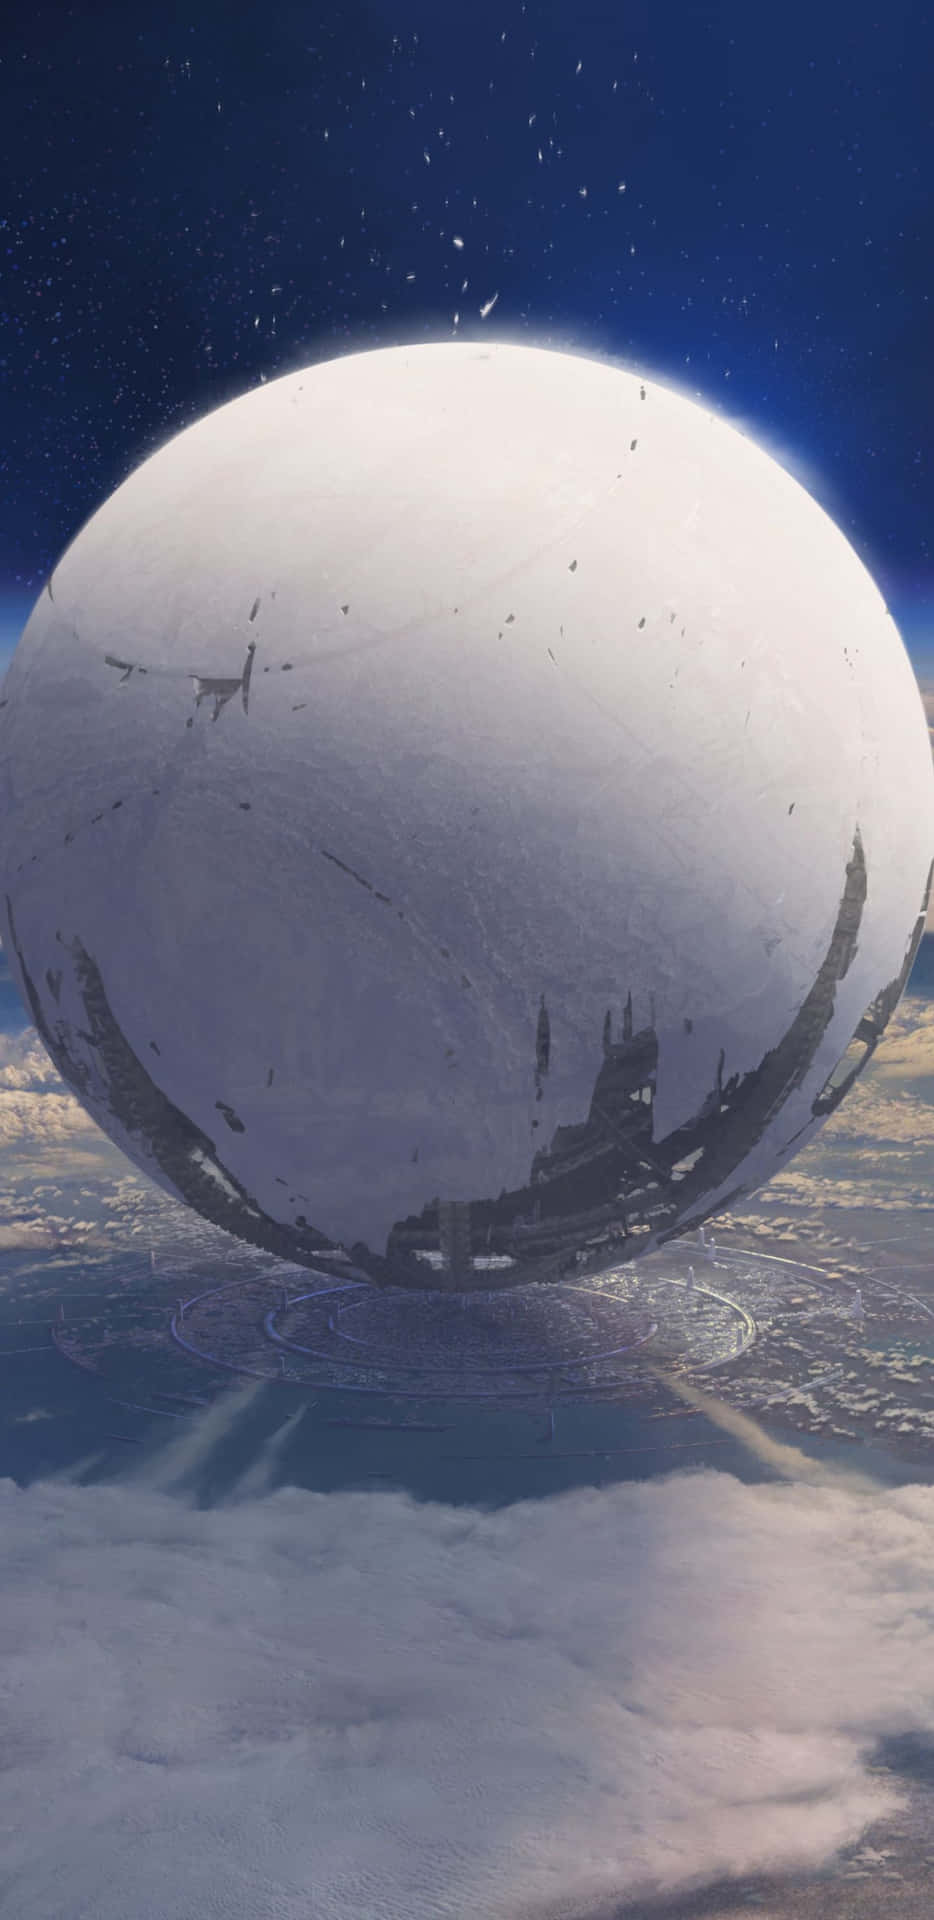 Pixel3xl Destiny 2 Bakgrundsbild Och Glänsande Sfär